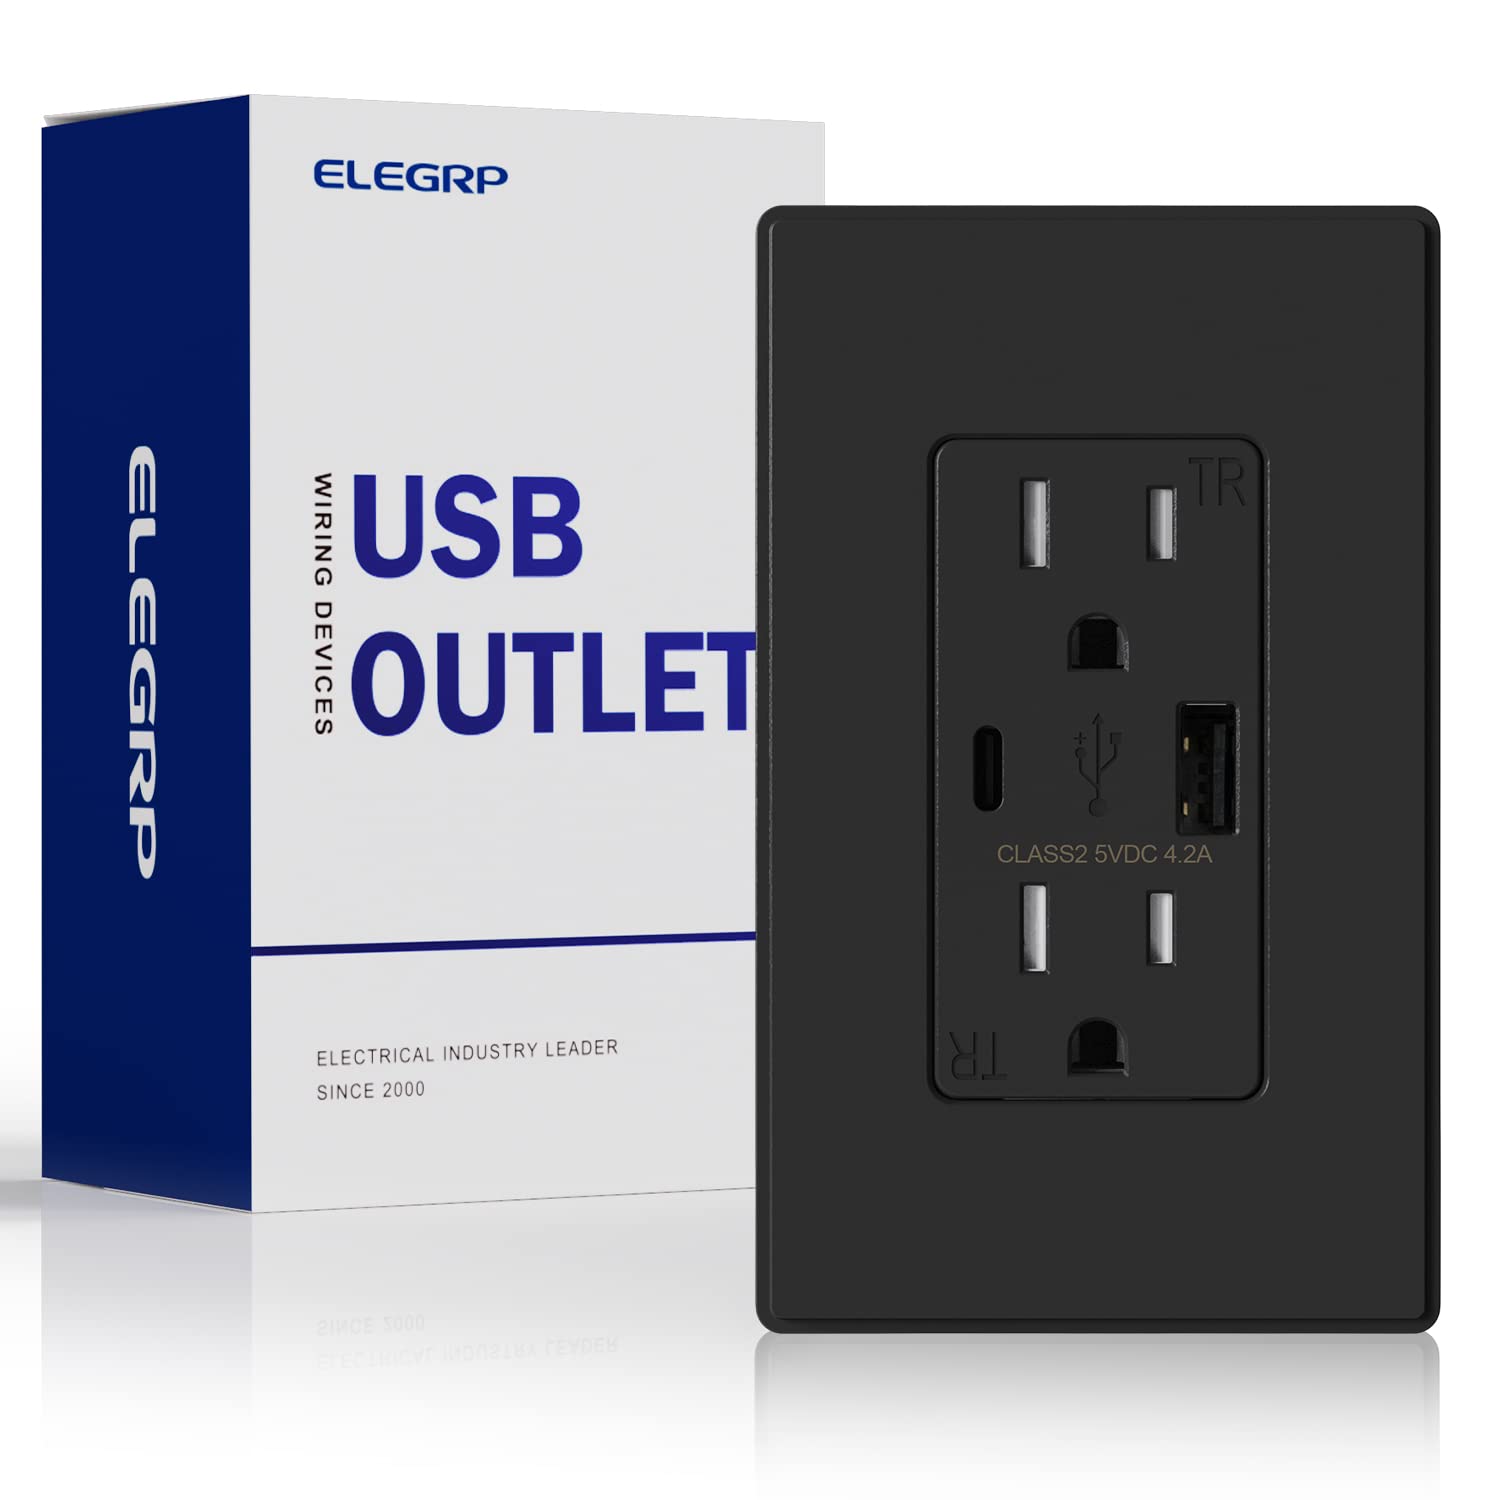 ELEGRP USB コンセント、タイプ C USB 壁充電器コンセント、耐タンパー性レセプタクル